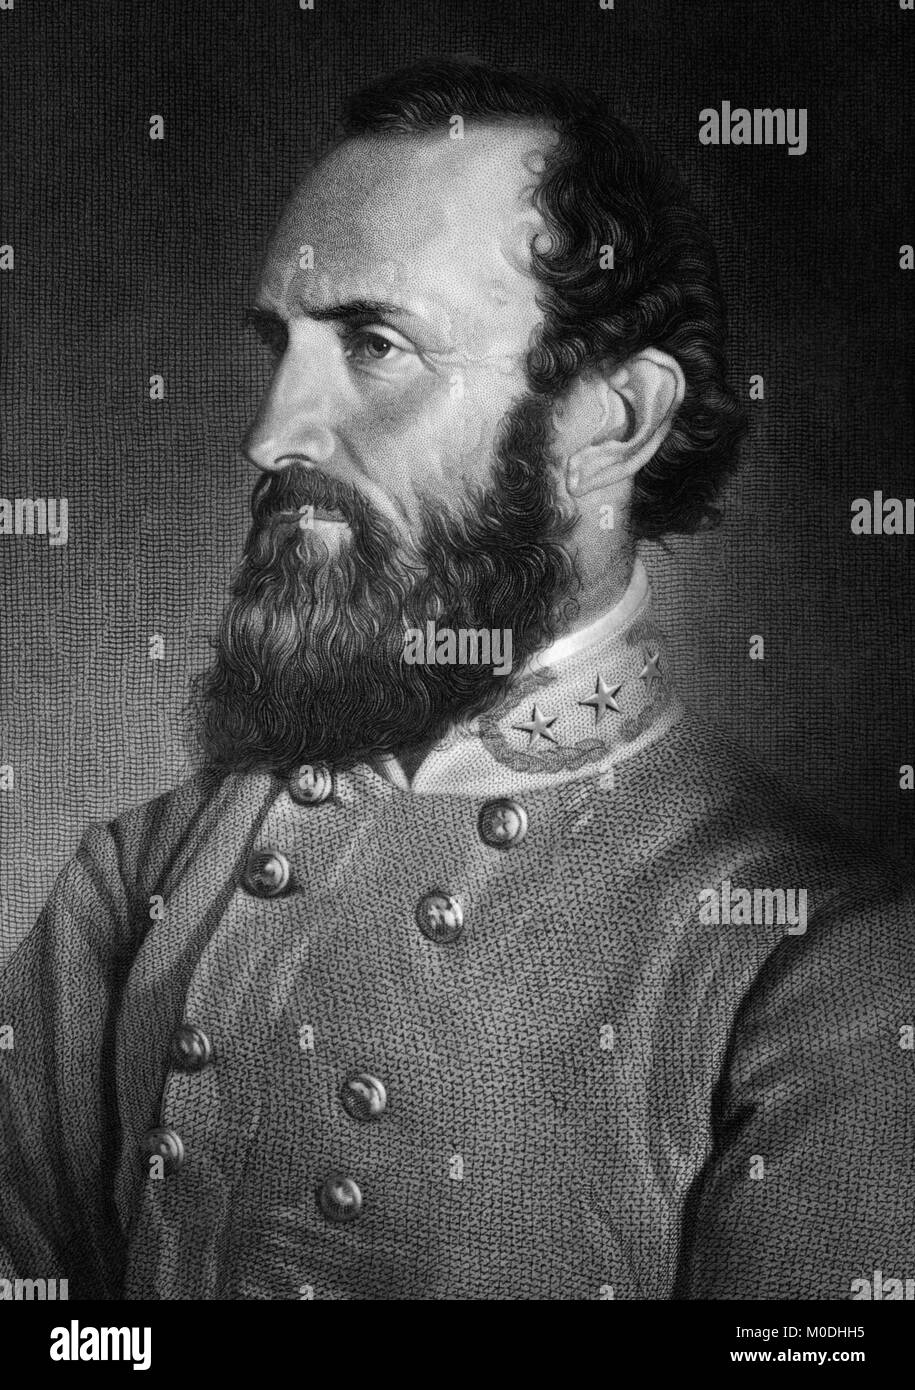 Thomas Jonathan 'Stonewall' Jackson (1824-1863) fue un Teniente General para los Estados Confederados de América (CSA) durante la Guerra Civil Americana, y el comandante confederado mejor conocido después de que el General Robert E. Lee. (Grabado de una foto retrato tomado el 26 de abril de 1869, siete días antes de ser herido en la batalla de Chancellorsville). Foto de stock